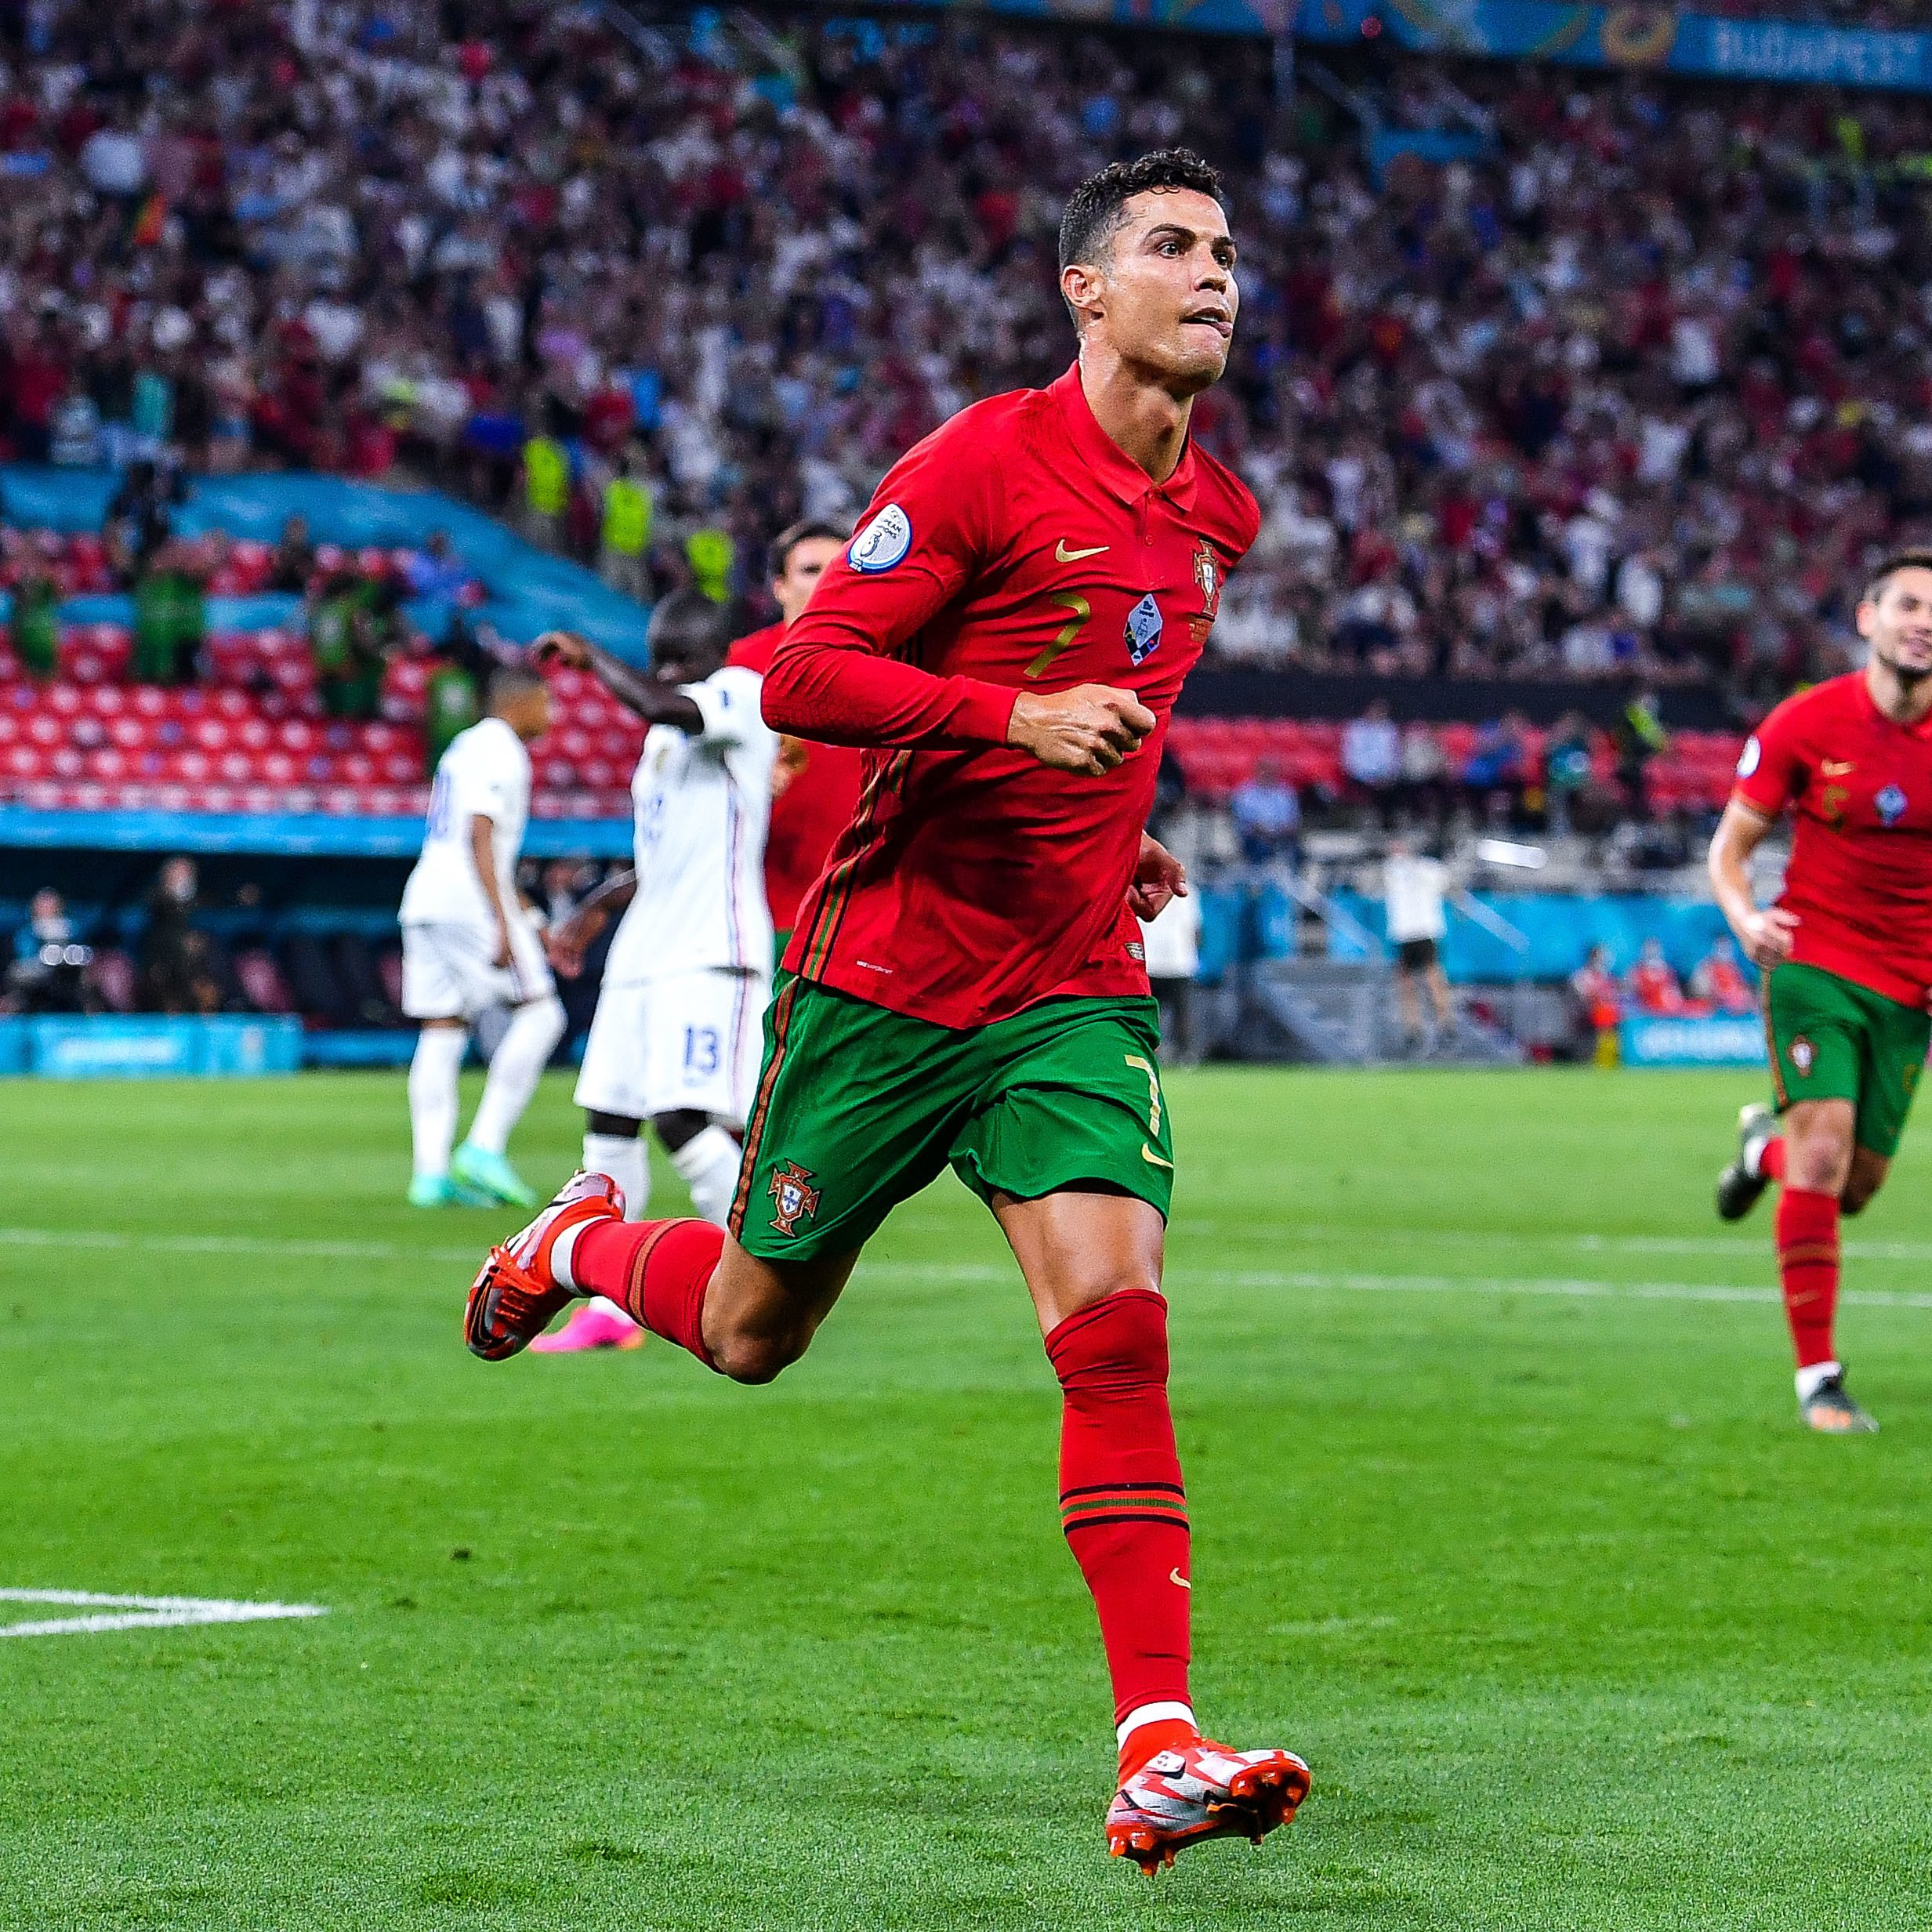 Bồ Đào Nha đã giành chiến thắng trước Ireland trong trận đấu World Cup mới nhất! Hãy xem hình ảnh của những ngôi sao đội tuyển quốc gia khi họ giành chiến thắng vang dội và đánh bại đối thủ của mình.